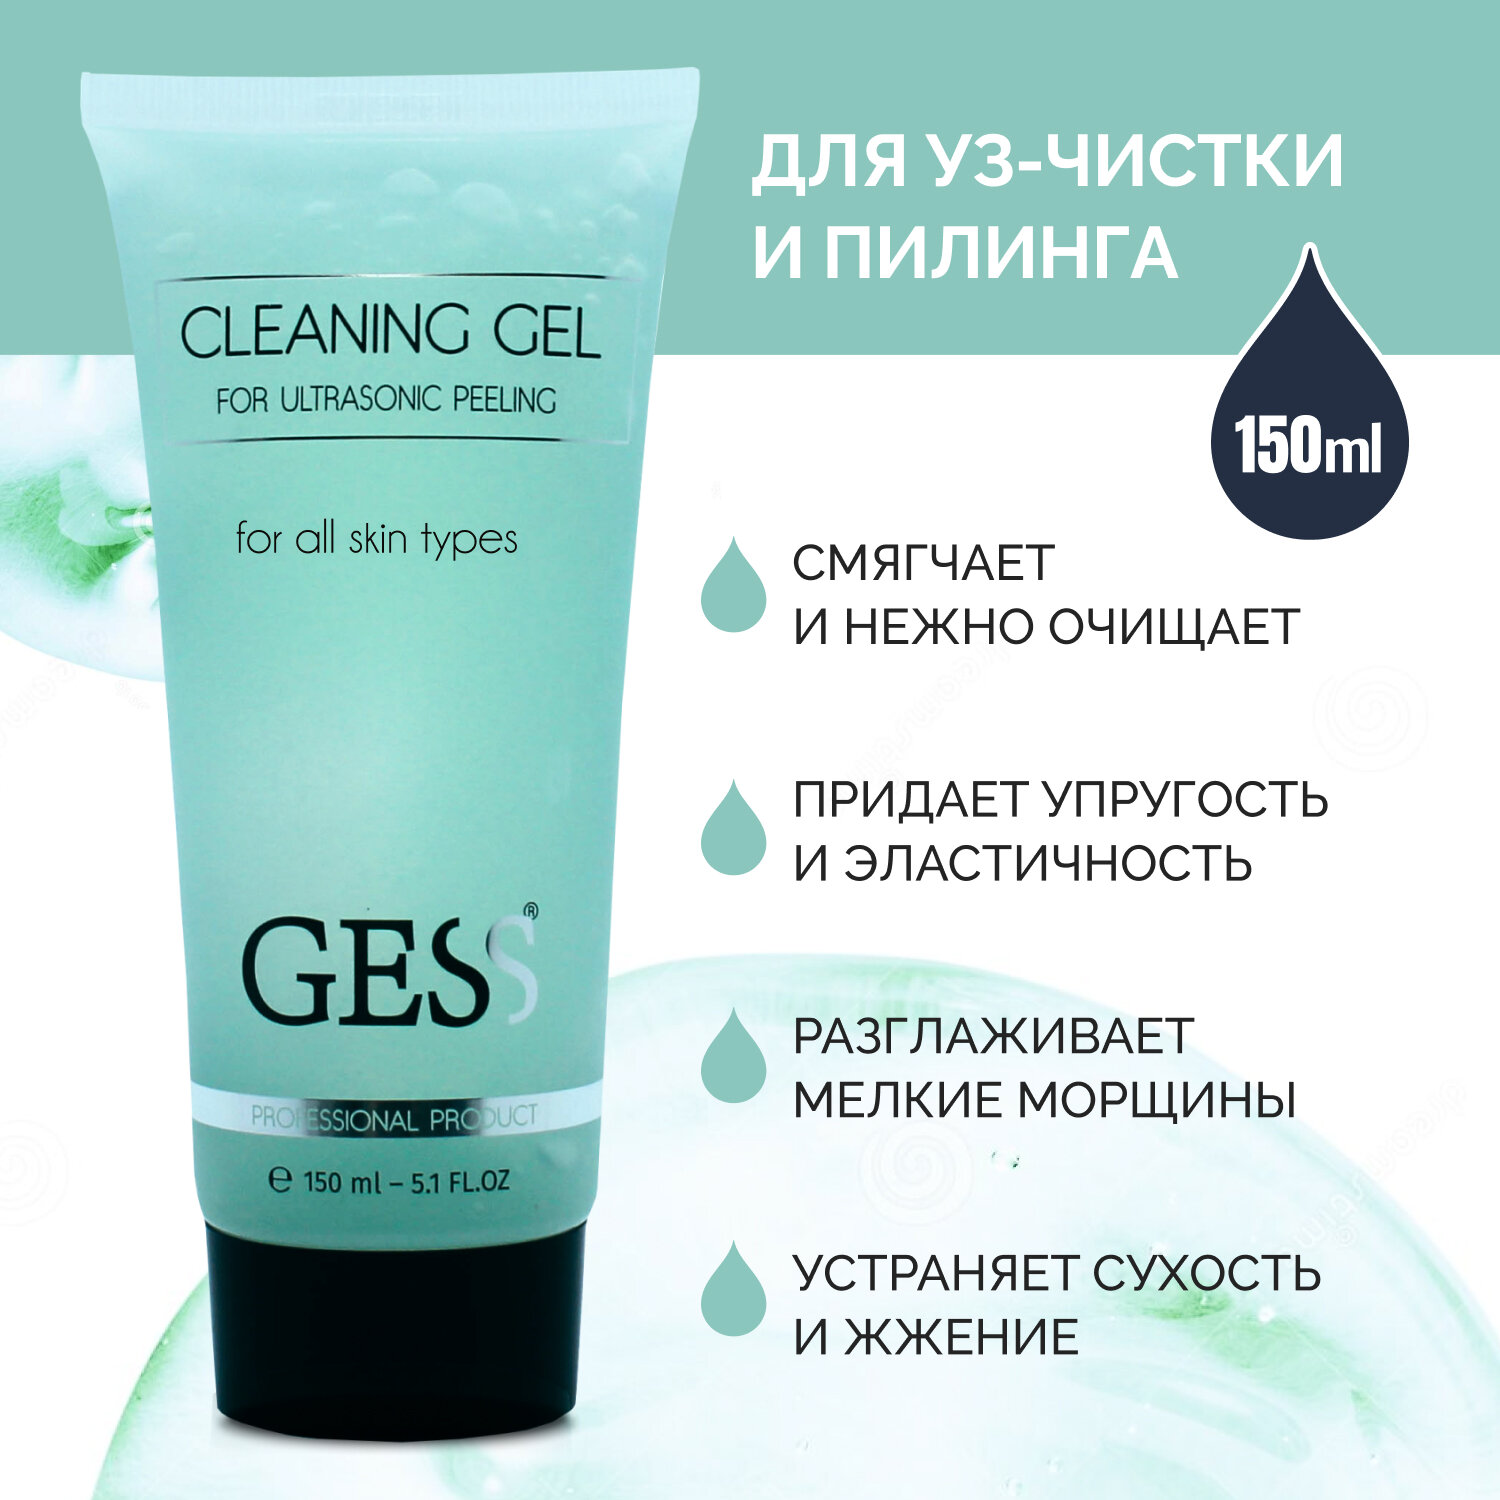 Гель для ультразвуковой чистки лица GESS Cleaning Gel для всех типов кожи очищающий гель